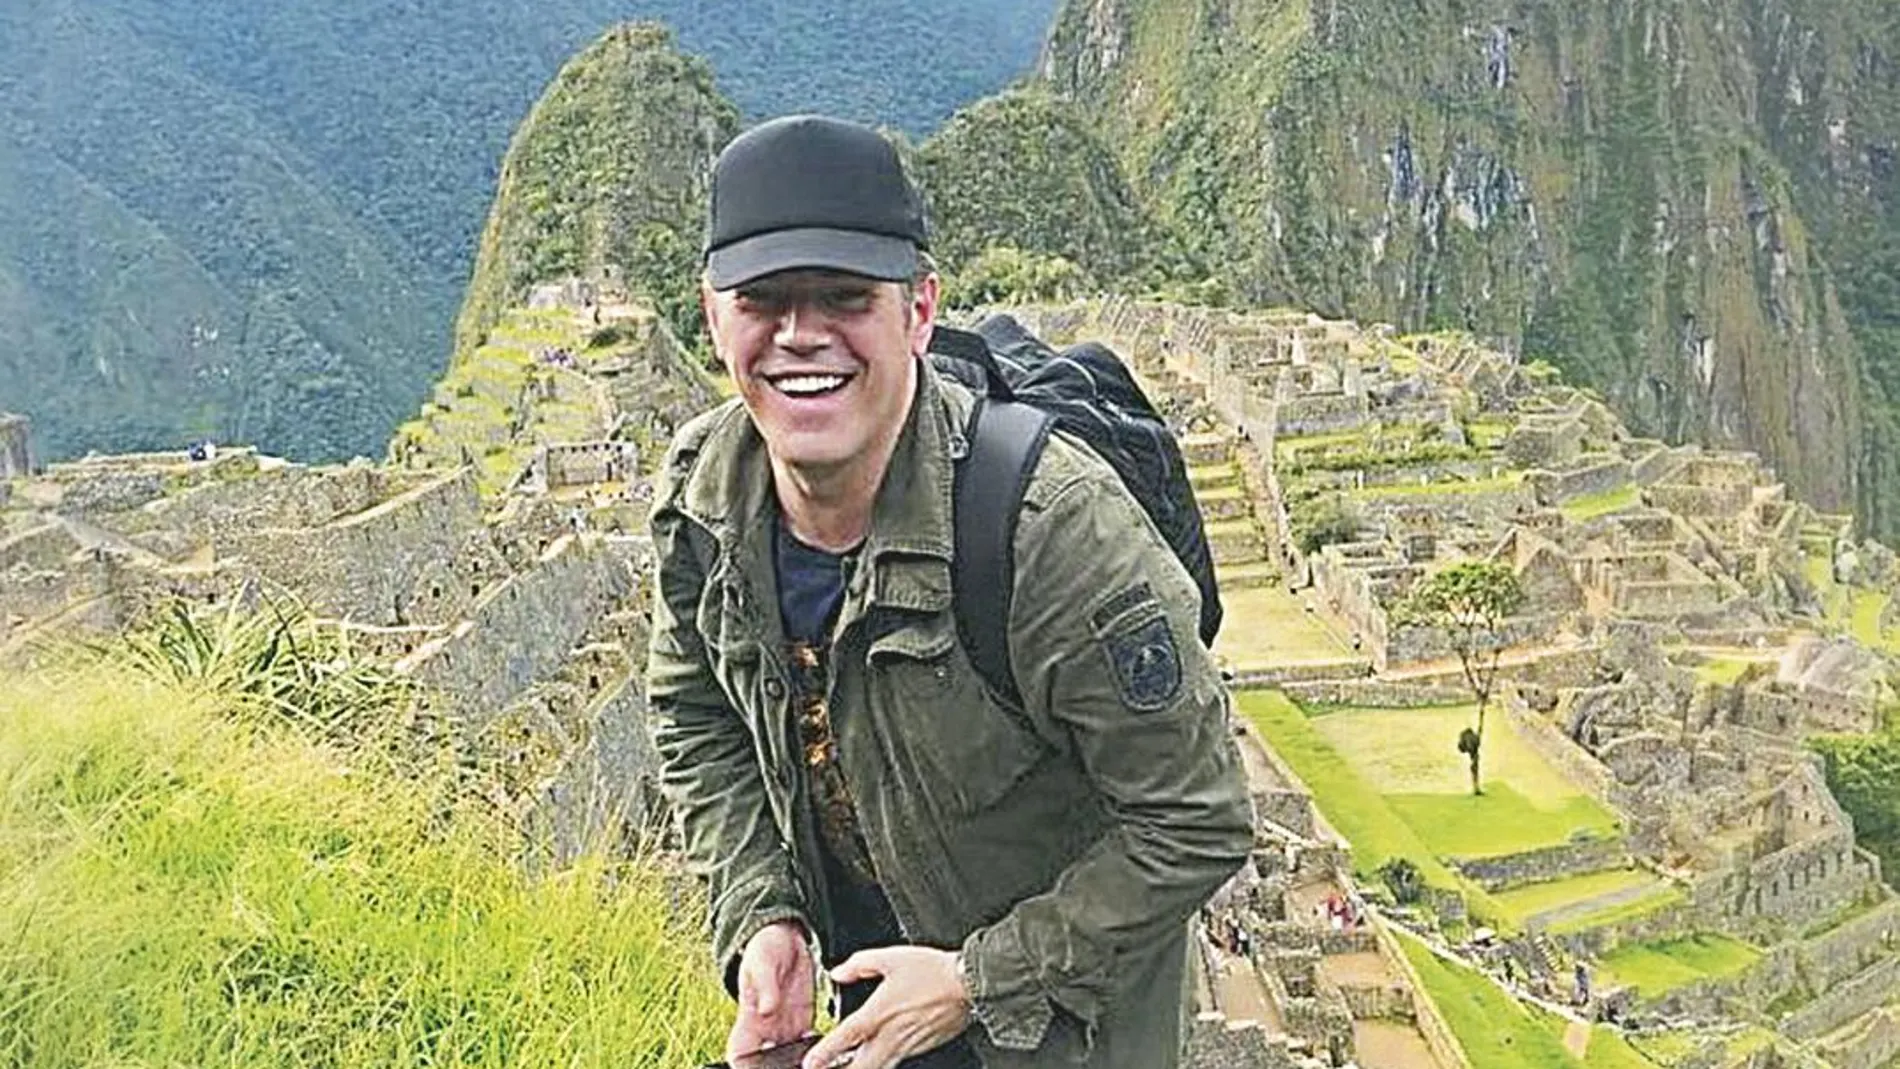 Machu Picchu no pudo faltar en el viaje del diseñador, que también recomienda el museo Mario Testino y el Hotel Monasterio